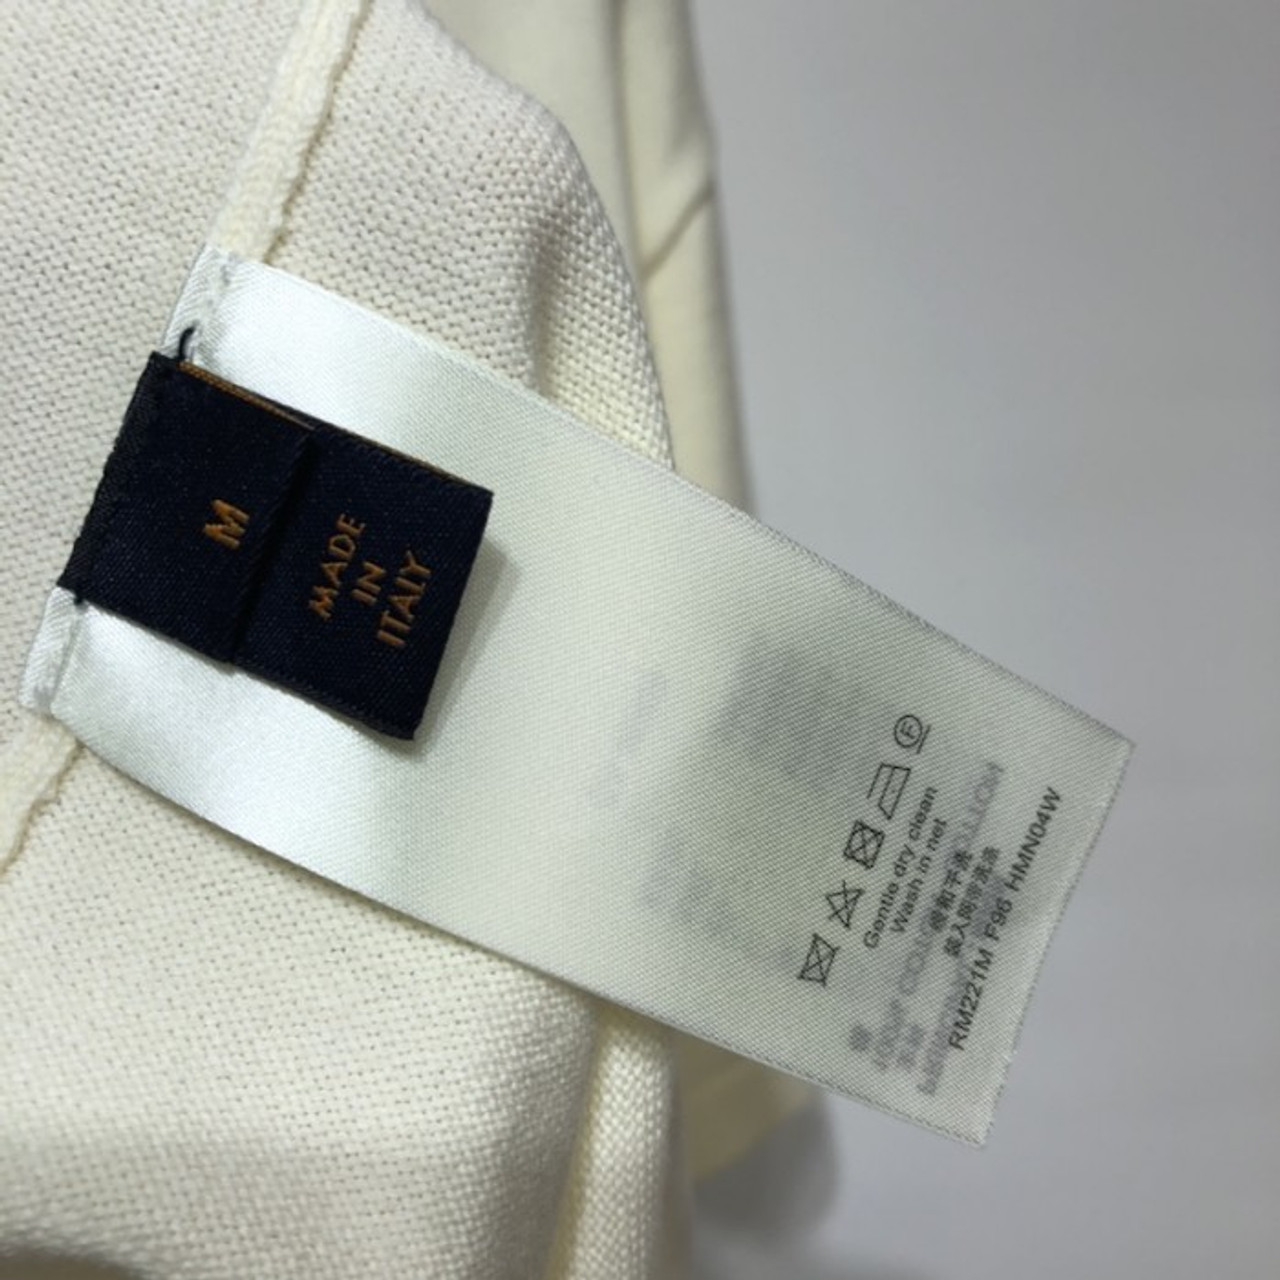 Giày Louis Vuitton Archlight Replica 1:1 (trắng vàng) giá rẻ nhất HCM